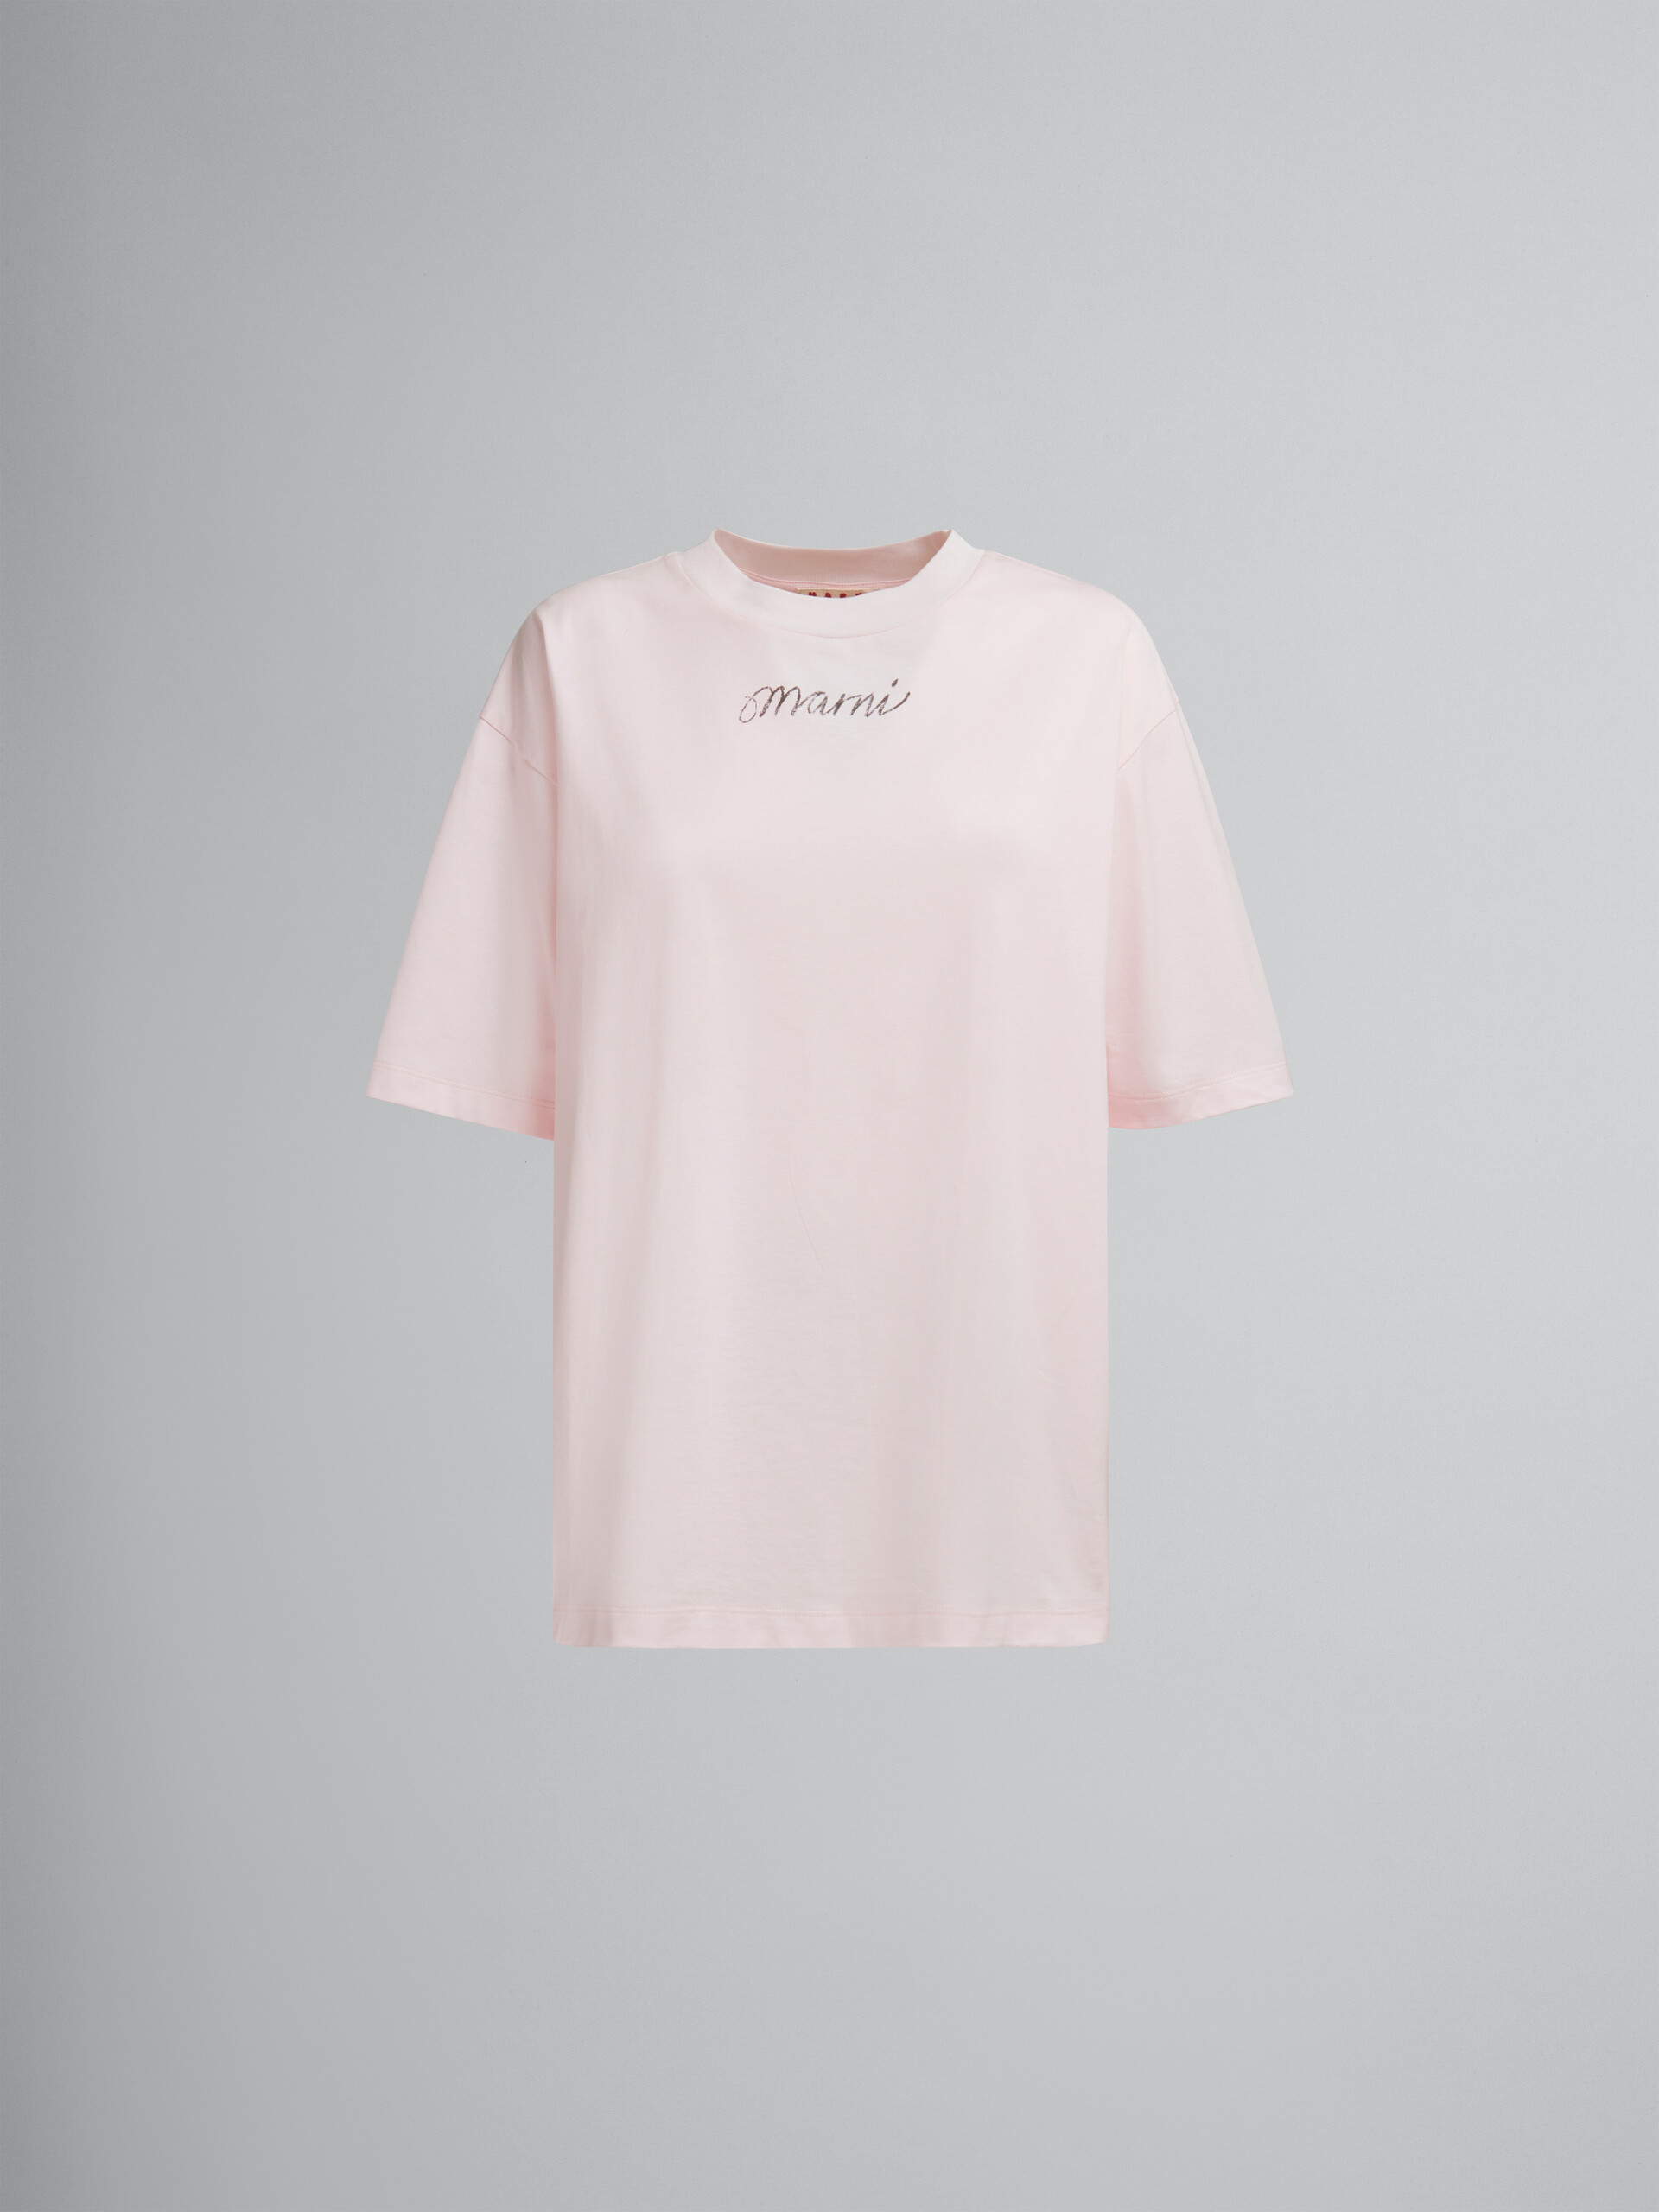 Rosafarbenes, kastenförmiges T-Shirt aus Bio-Baumwolle mit wiederholtem Logo - T-shirts - Image 1